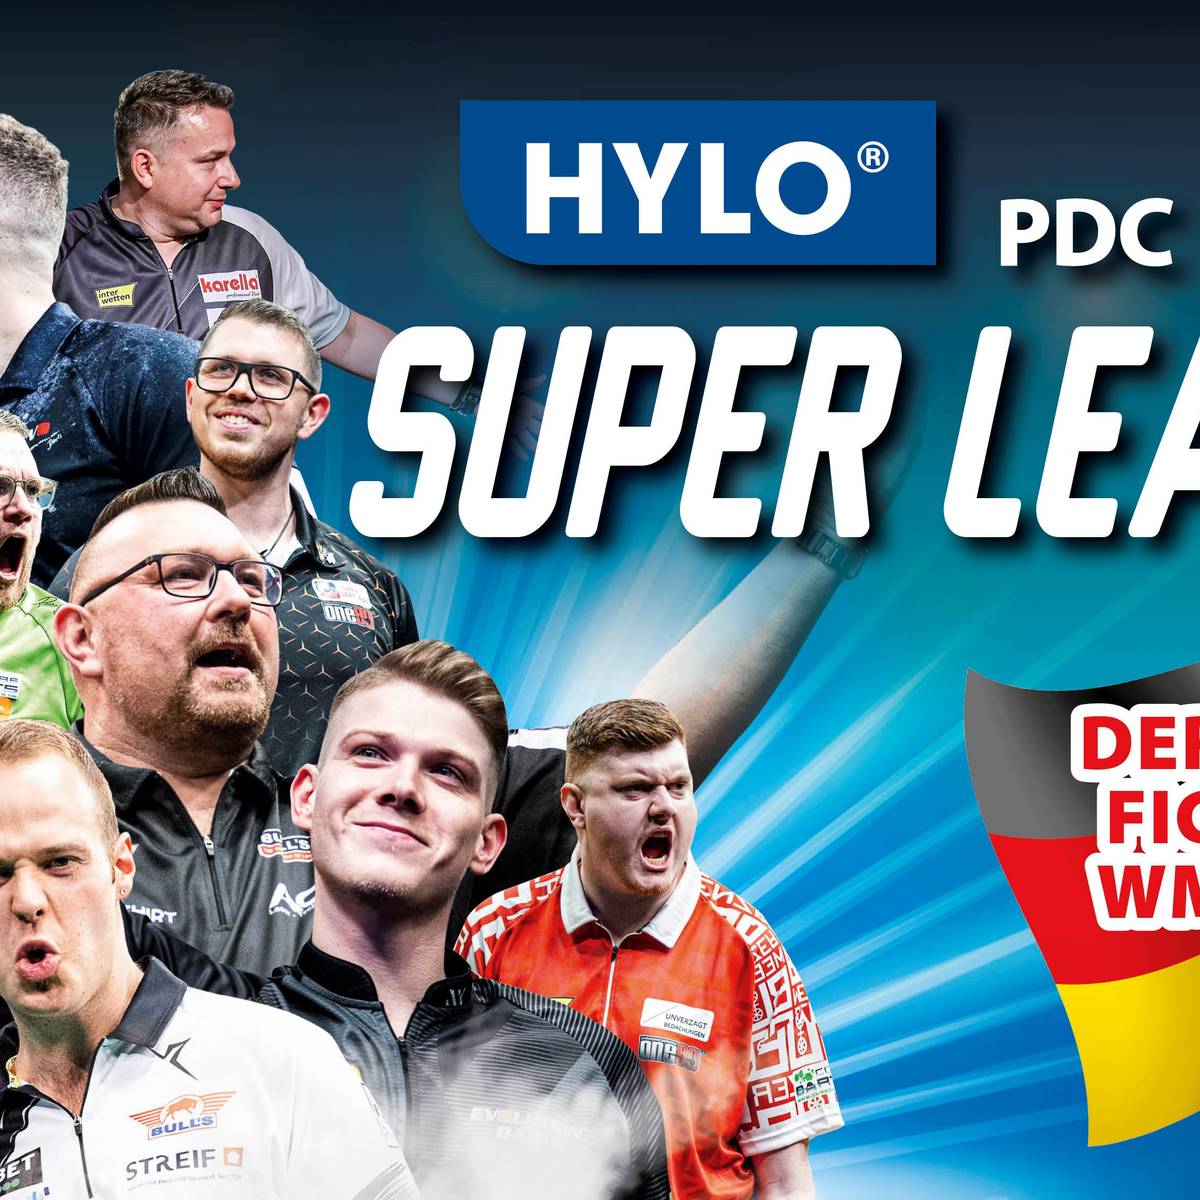 Welcher Deutsche fährt zur Darts-WM? Die PDC Europe Super League LIVE auf SPORT1